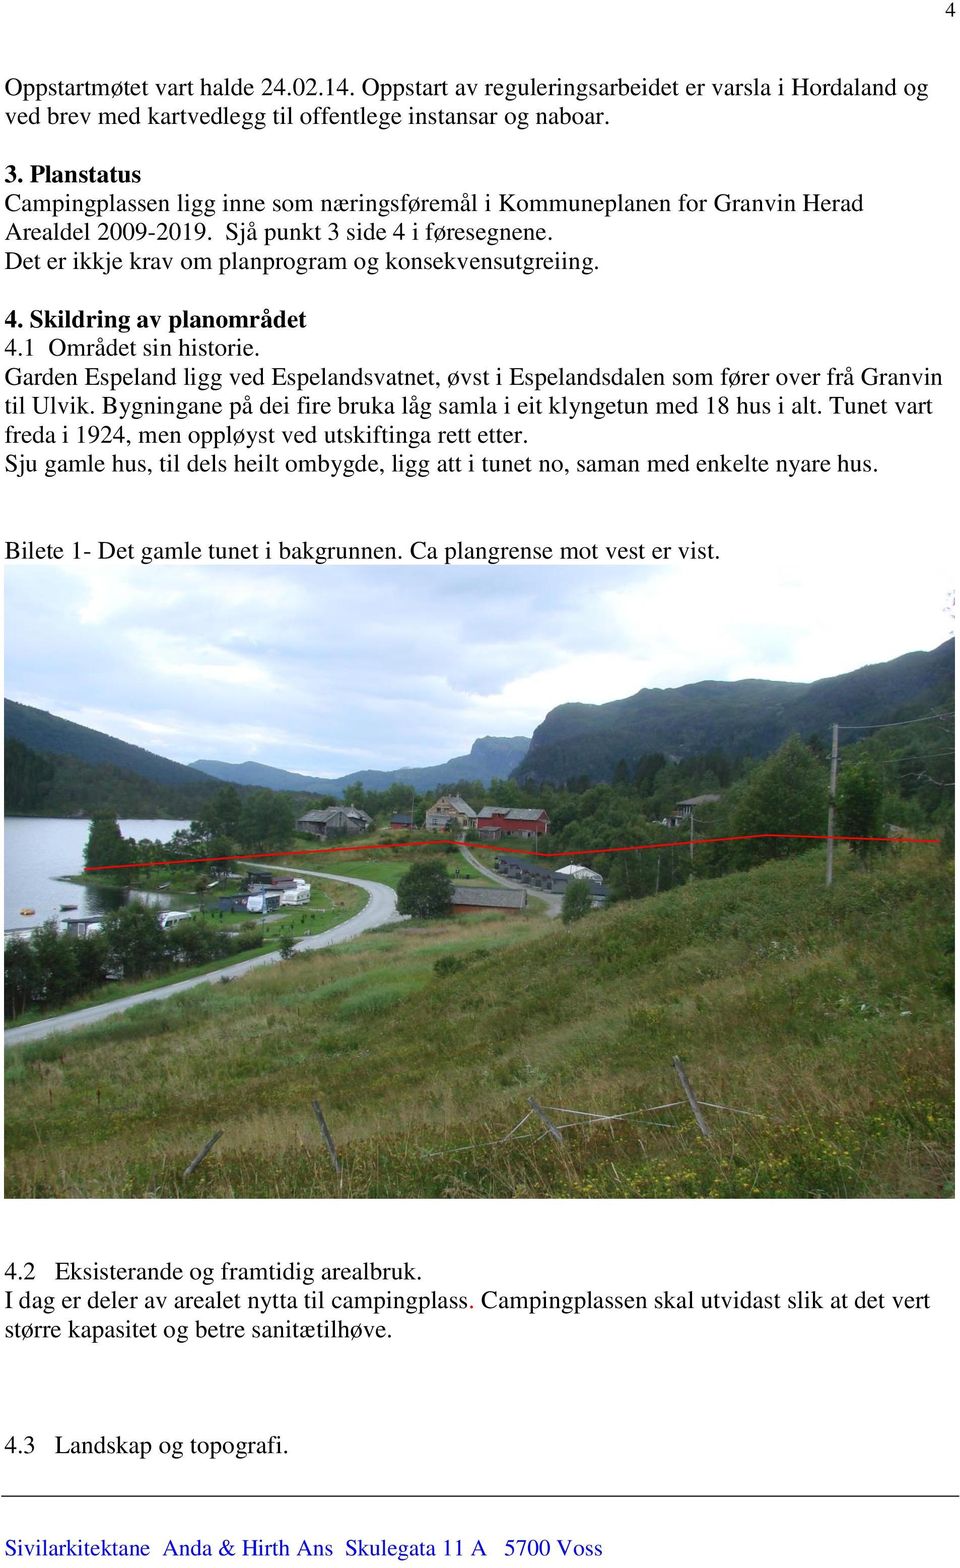 4. Skildring av planområdet 4.1 Området sin historie. Garden Espeland ligg ved Espelandsvatnet, øvst i Espelandsdalen som fører over frå Granvin til Ulvik.